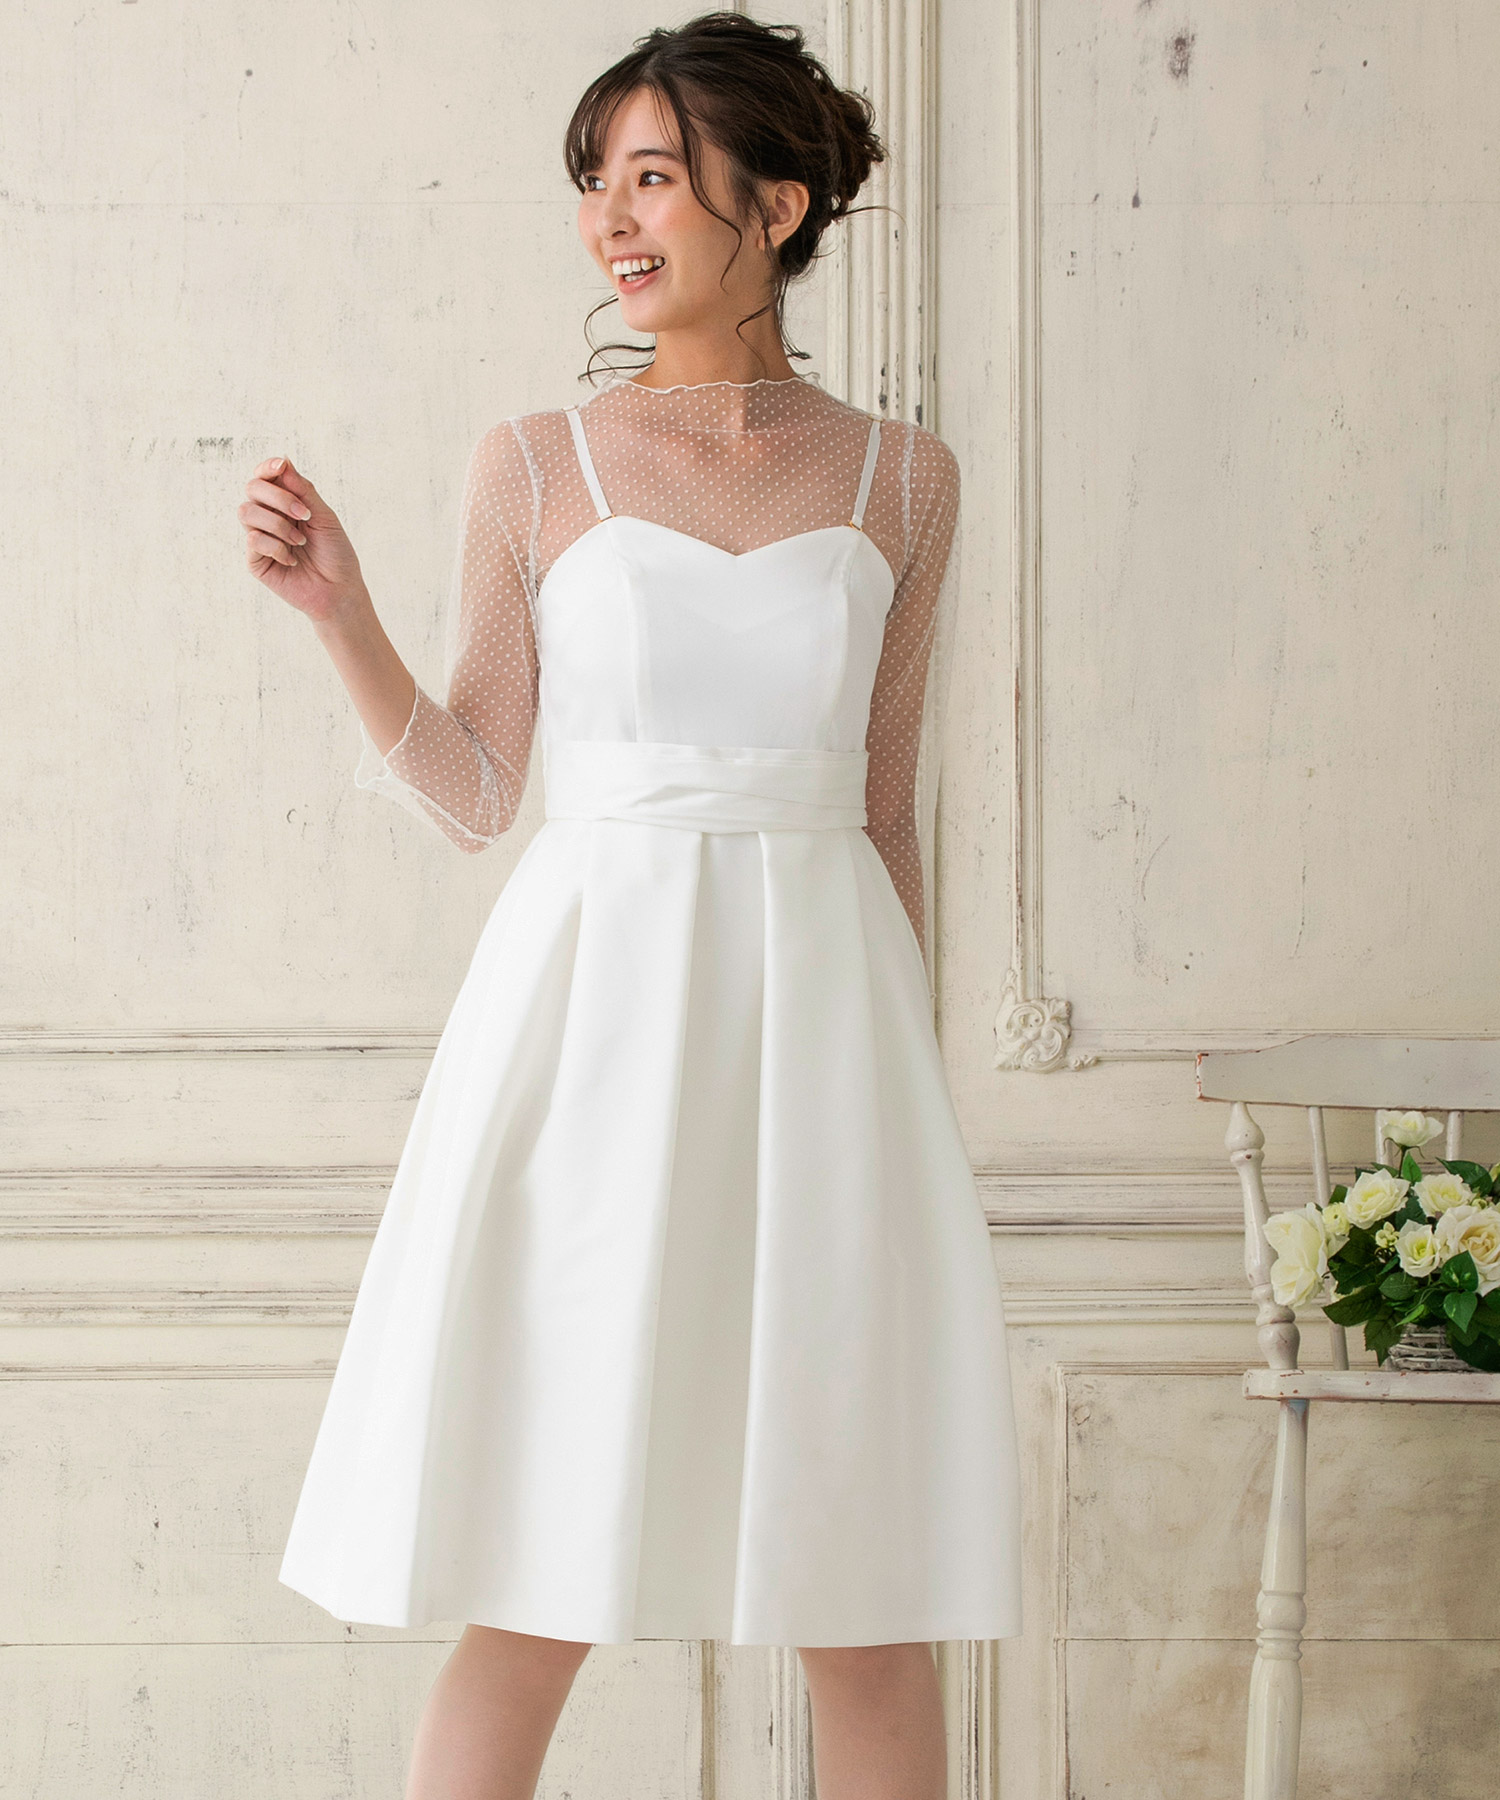 【結婚式・ウエディングドレス】ドットチュールインナー付き フレアショートウェディングドレス